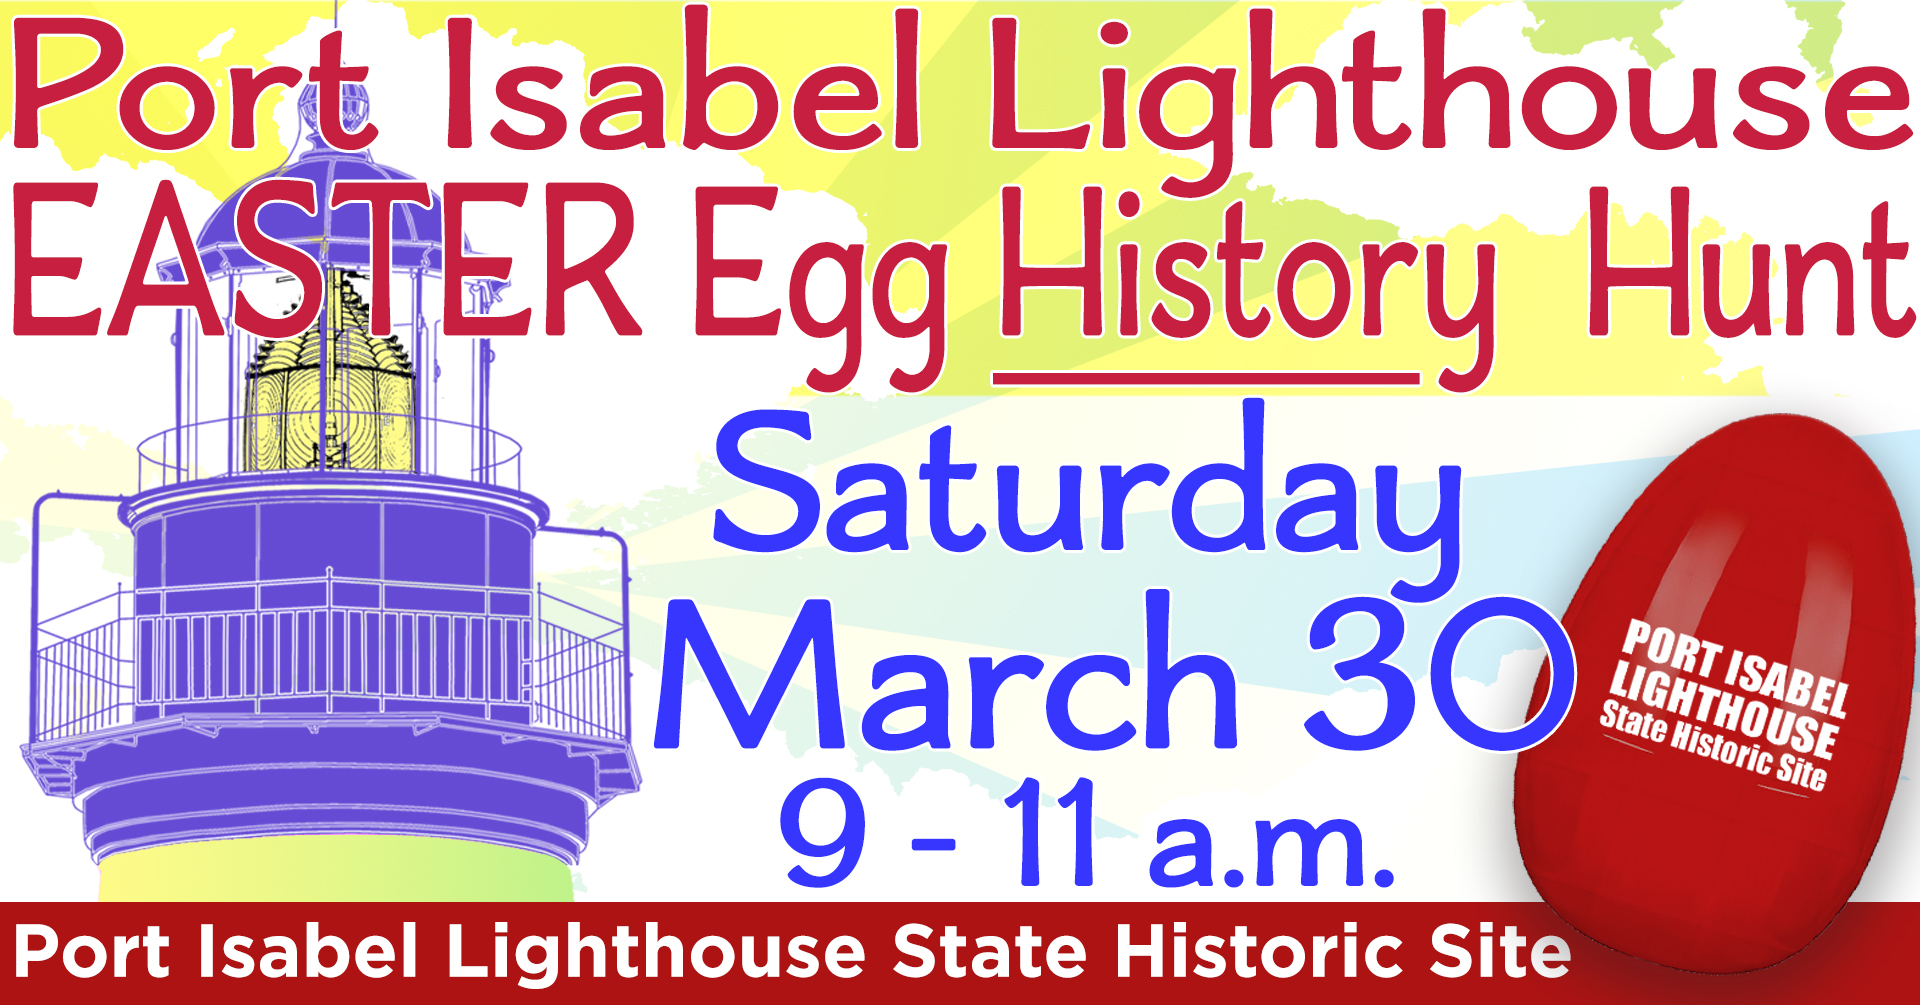 Port Isabel Lighthouse Easter Egg History Hunt